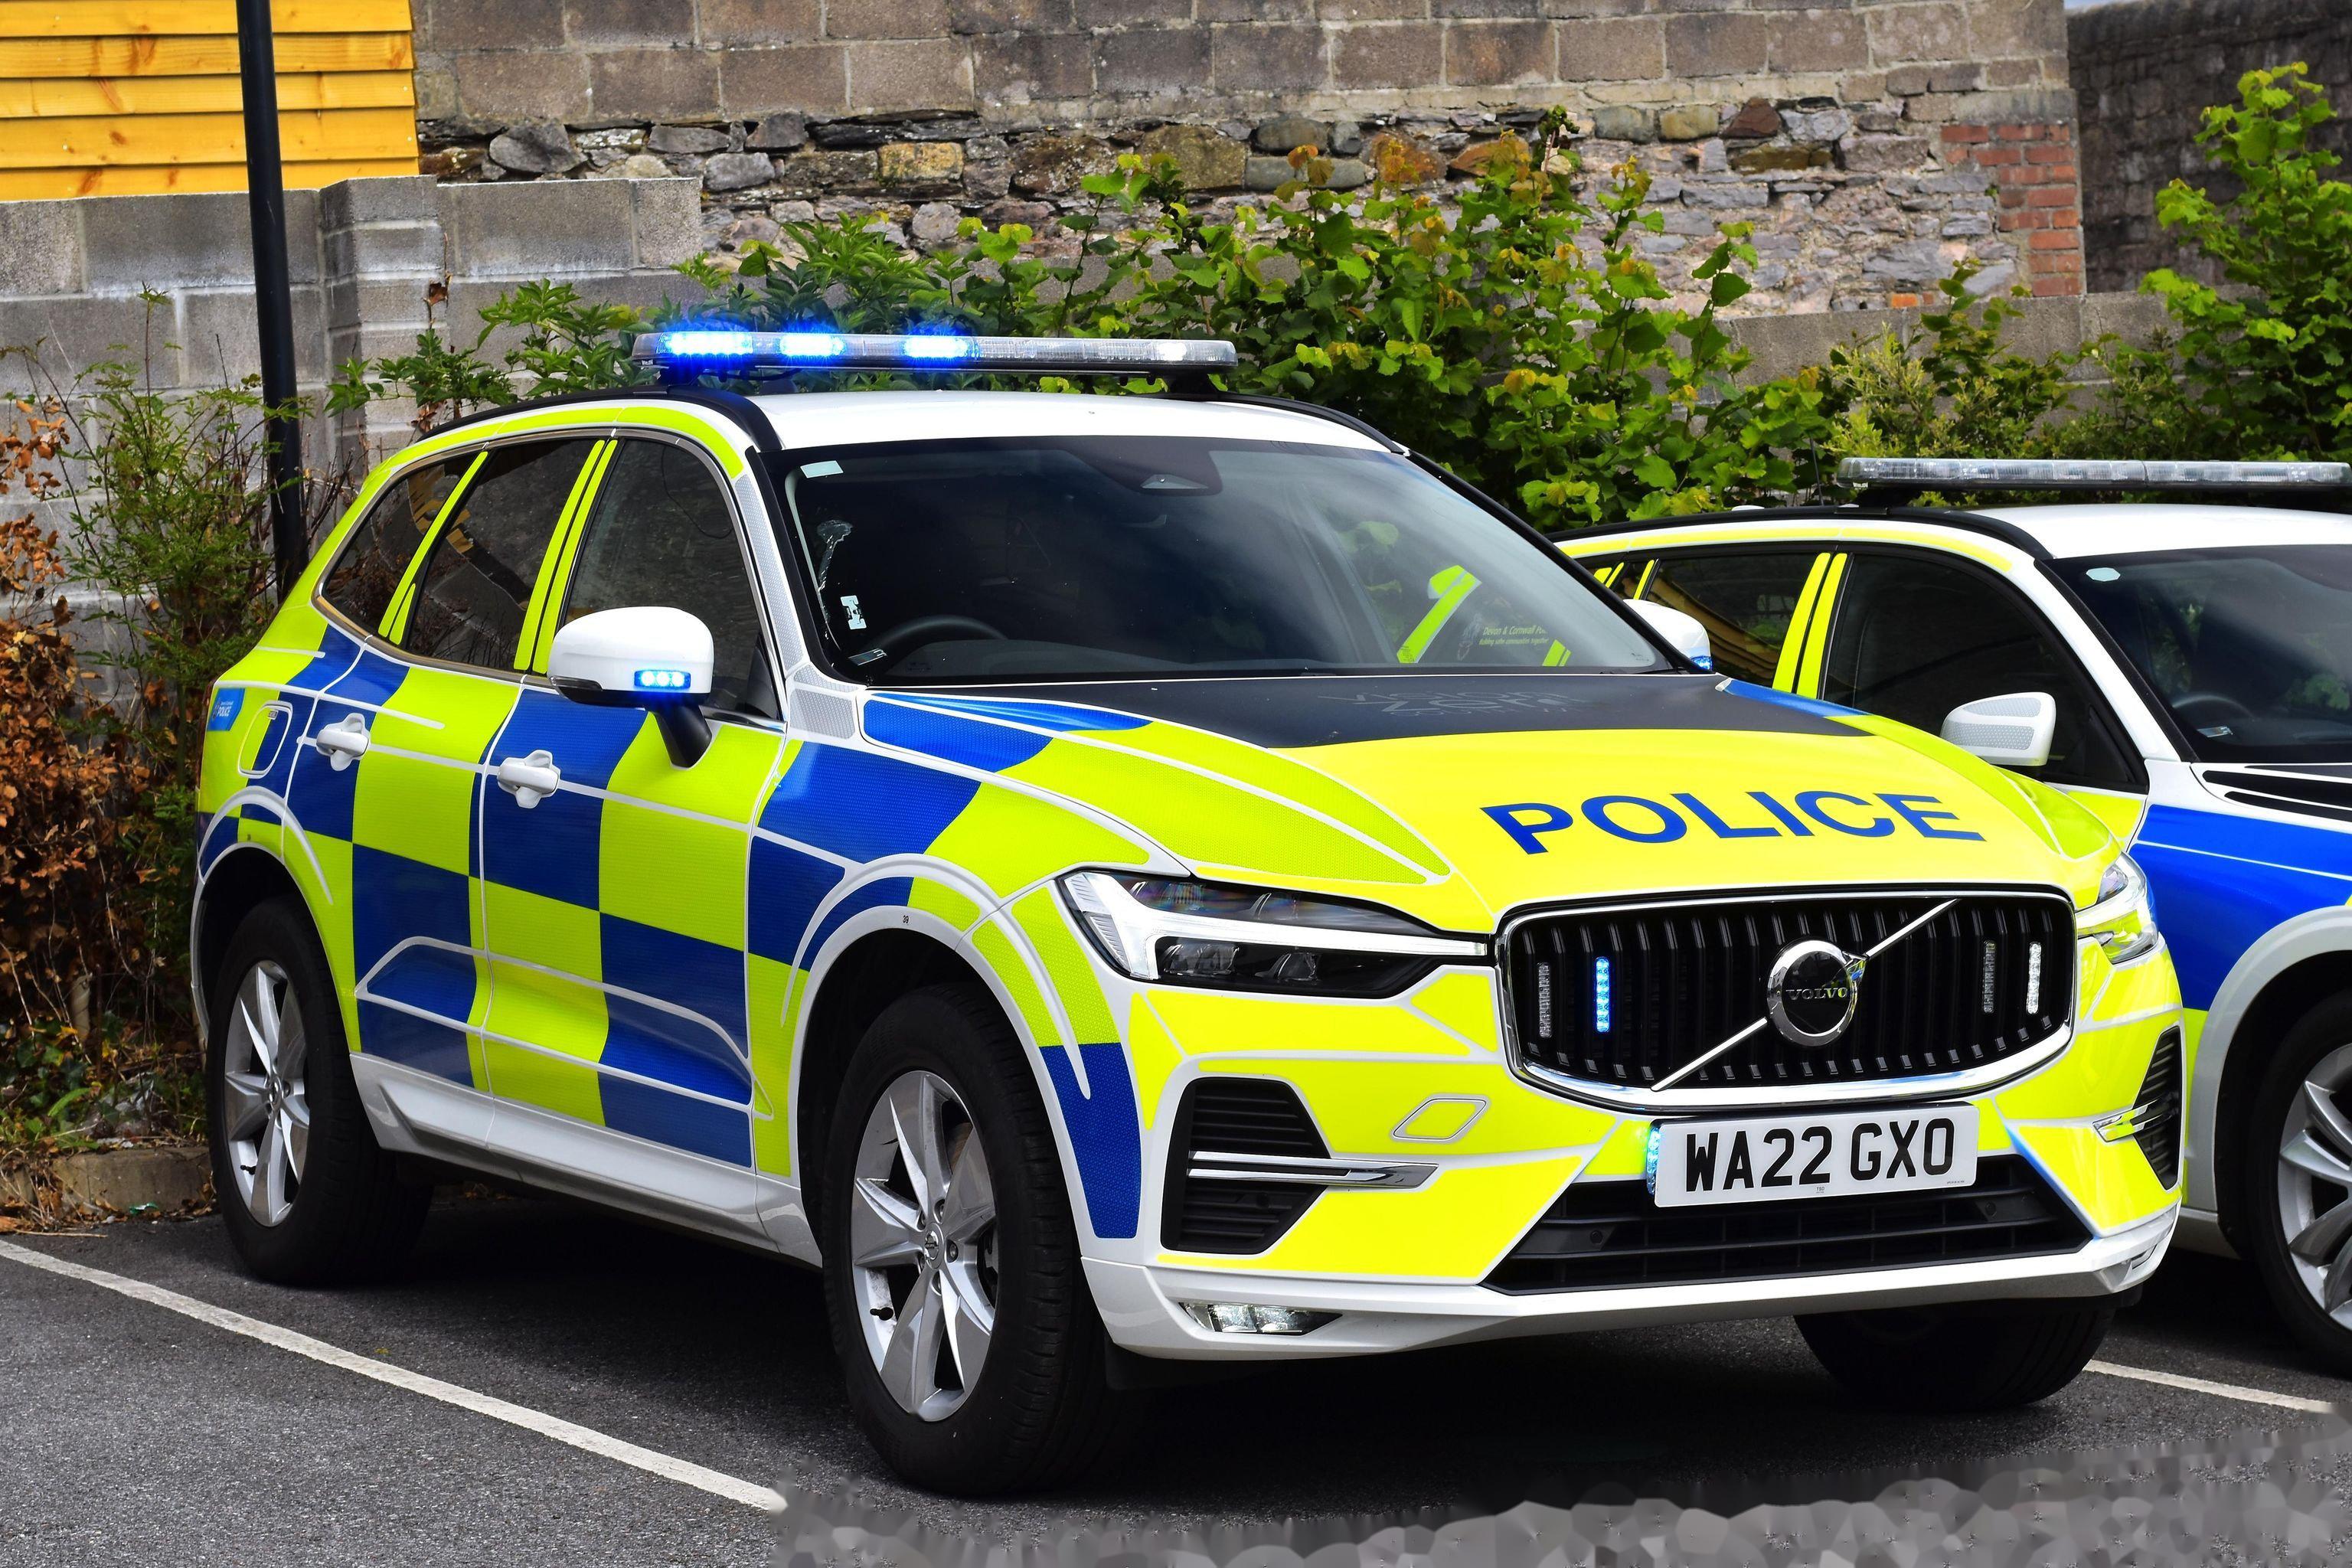 又是英国警方的各种沃尔沃警车 1&2 22款晚期型 v60 r